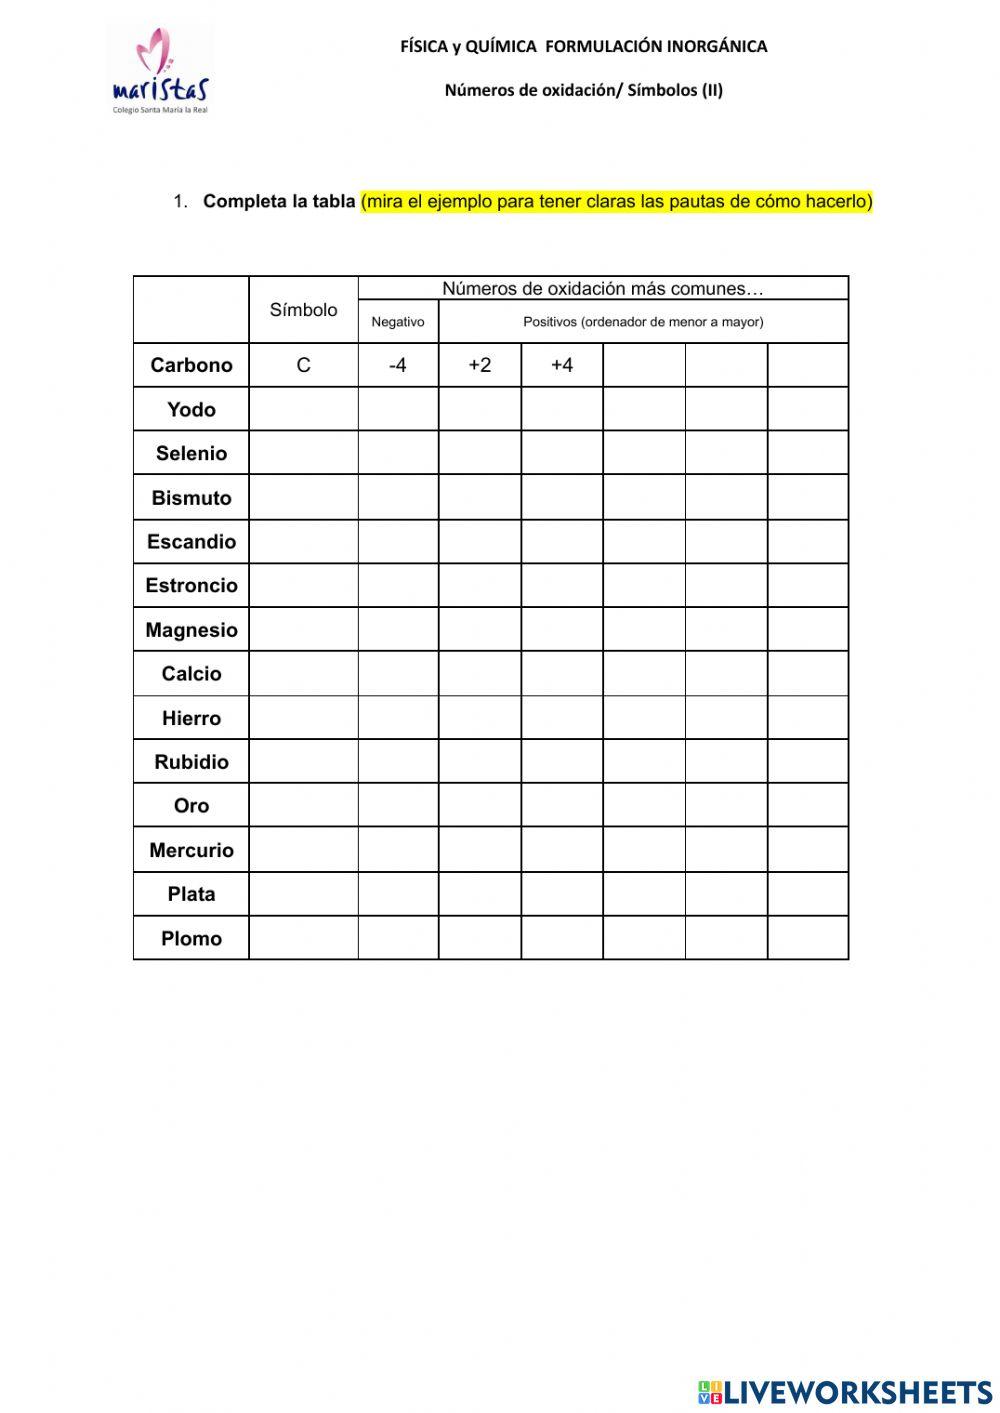 Elementos de la tabla periódica: Símbolos y Números de oxidación (II)